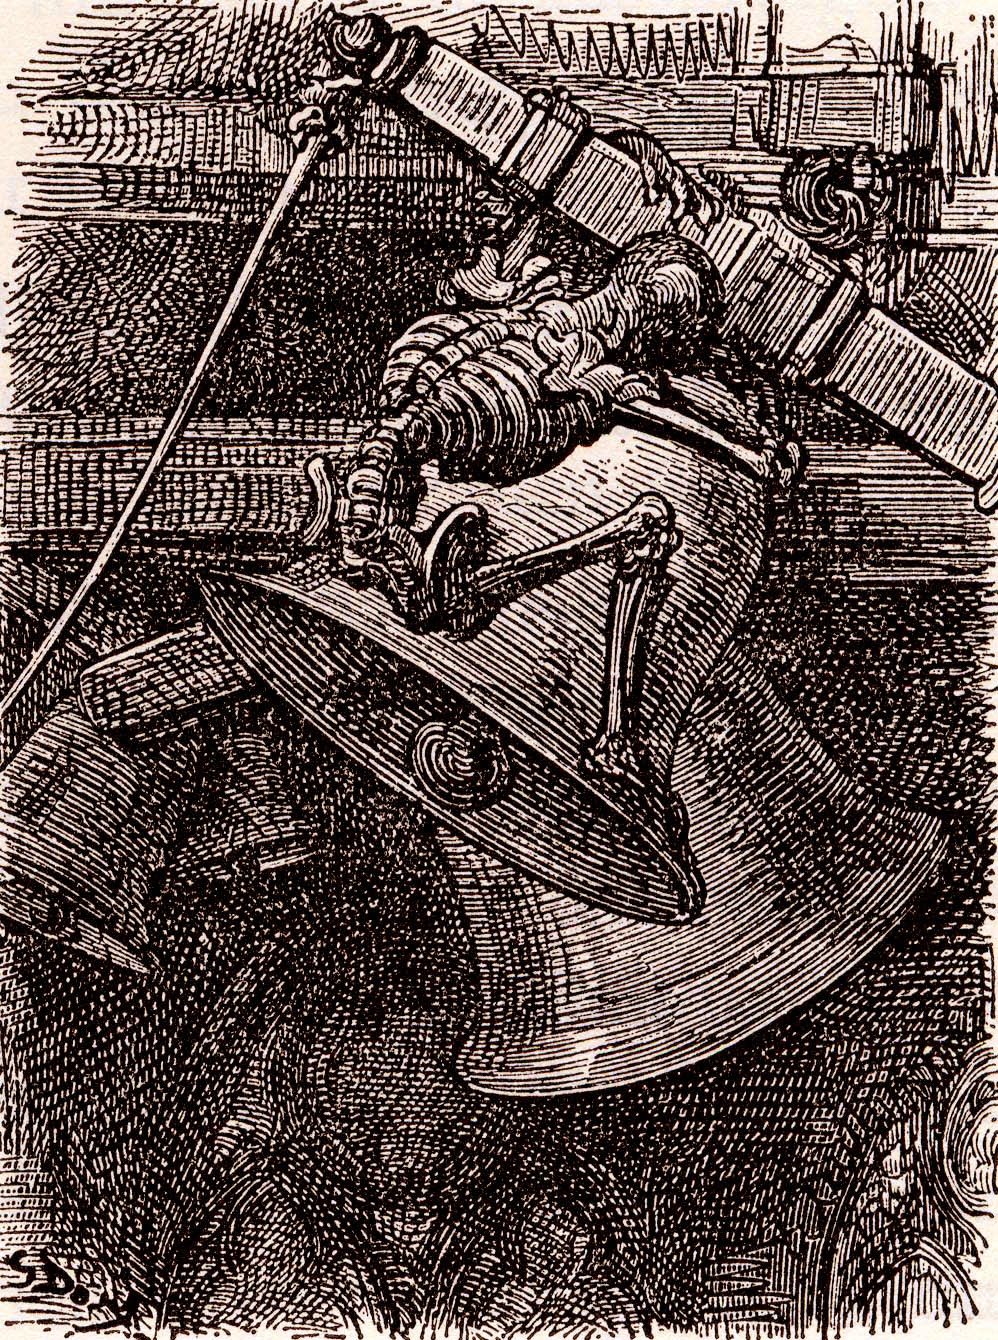 Rondo alla campanella, der Tod „läutet“ die Glocke. Gustav Doré, um 1850.